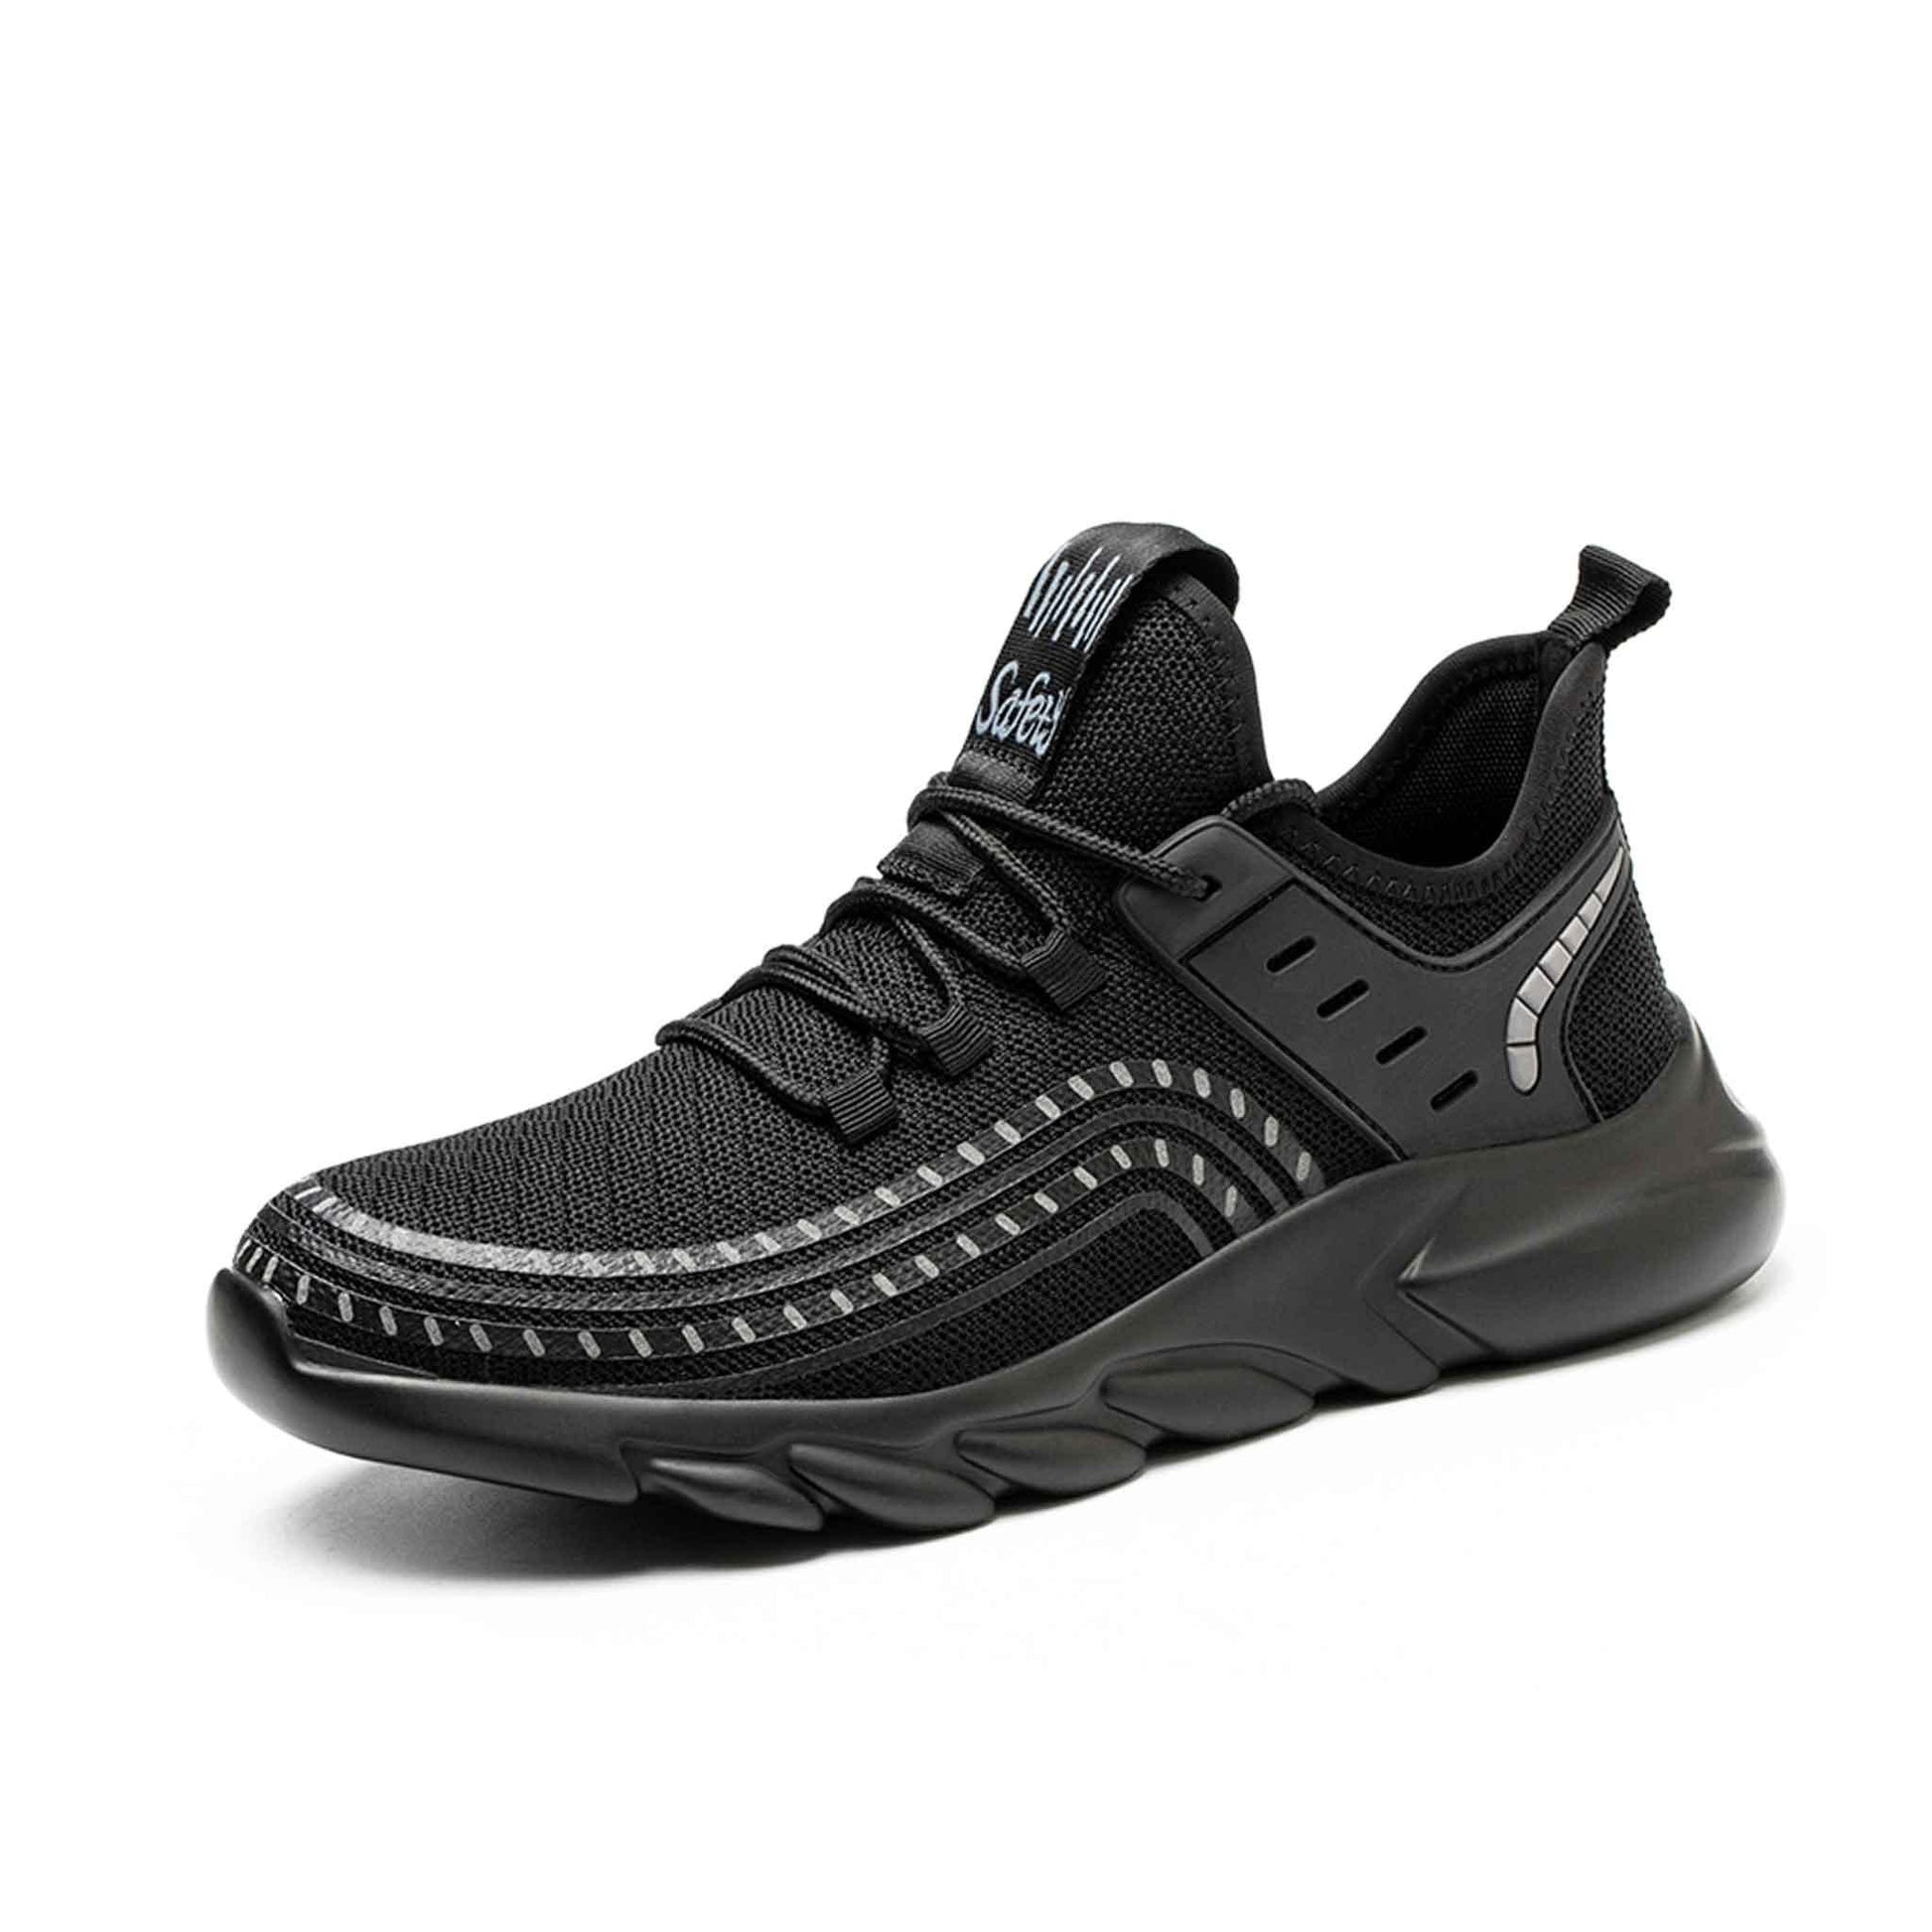 Men's Steel Toe Sneakers - Shock Absorbing | B154 - USINE PRO Footwear